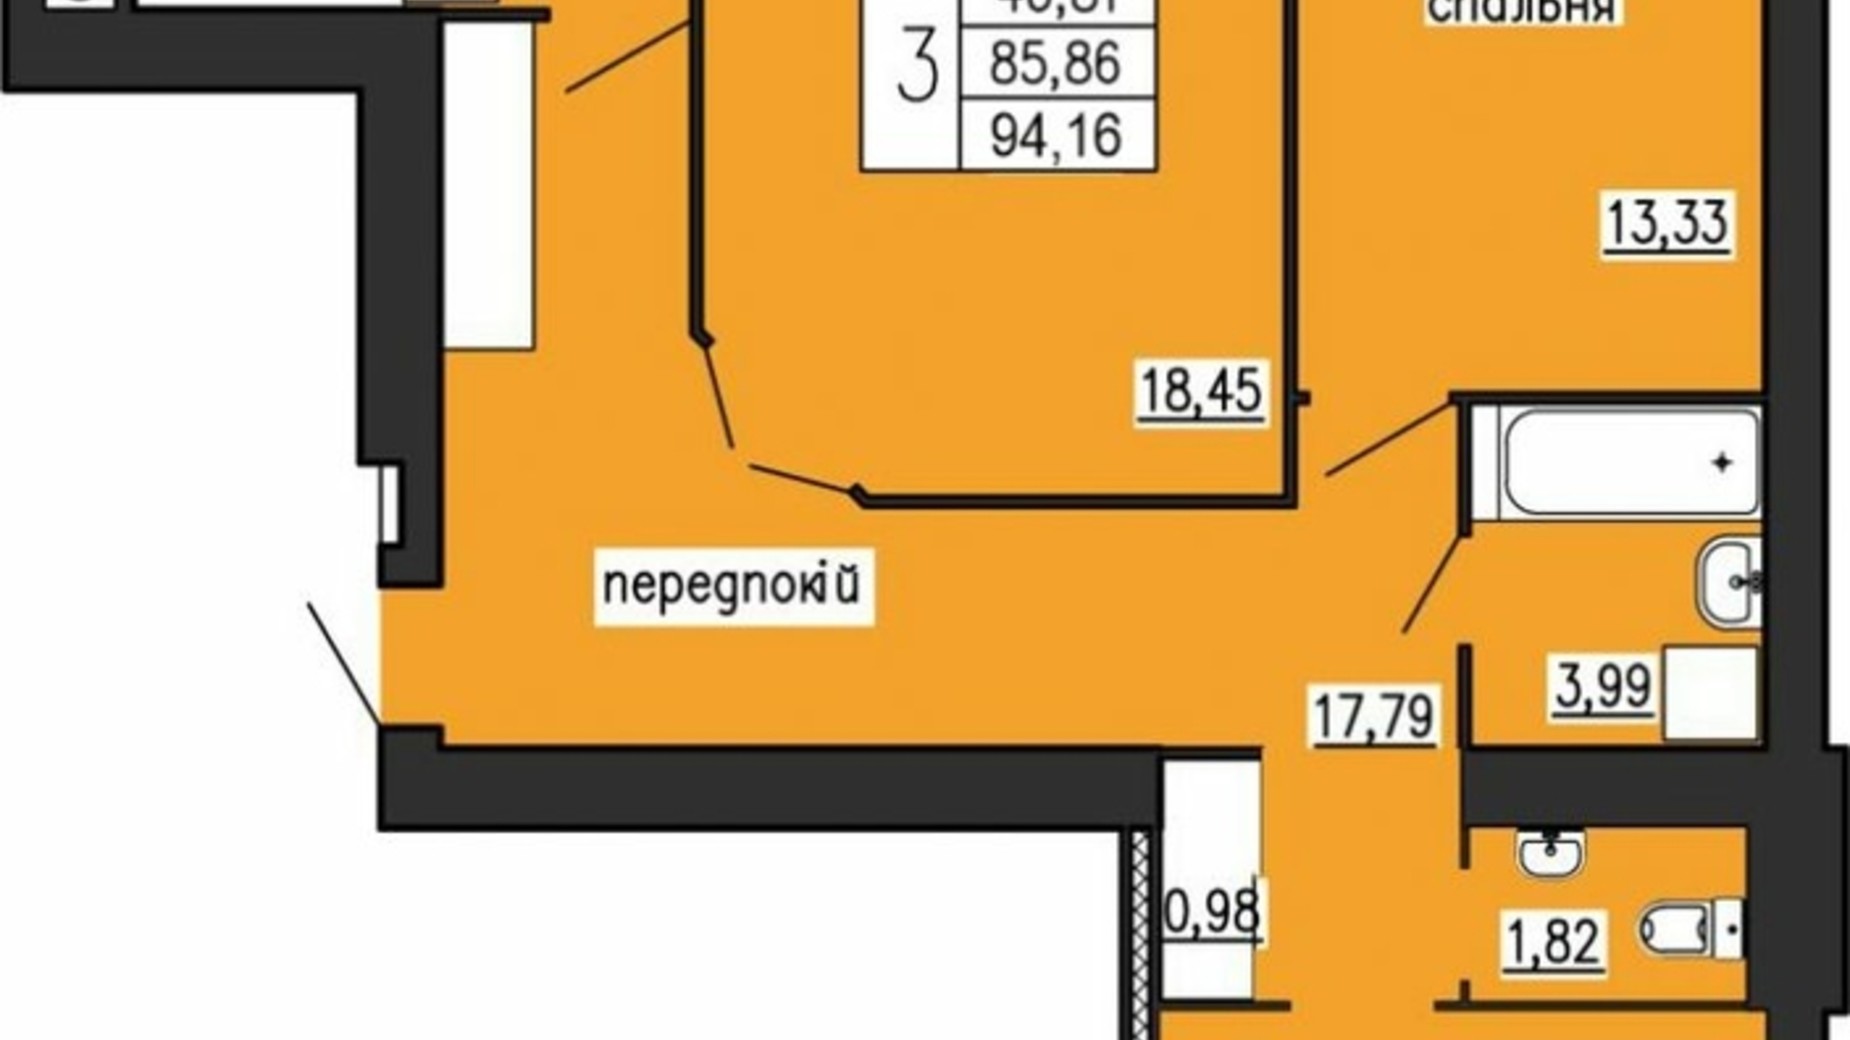 Планировка 3-комнатной квартиры в ЖК по ул. Лучаковского-Троллейбусная 94.16 м², фото 615631